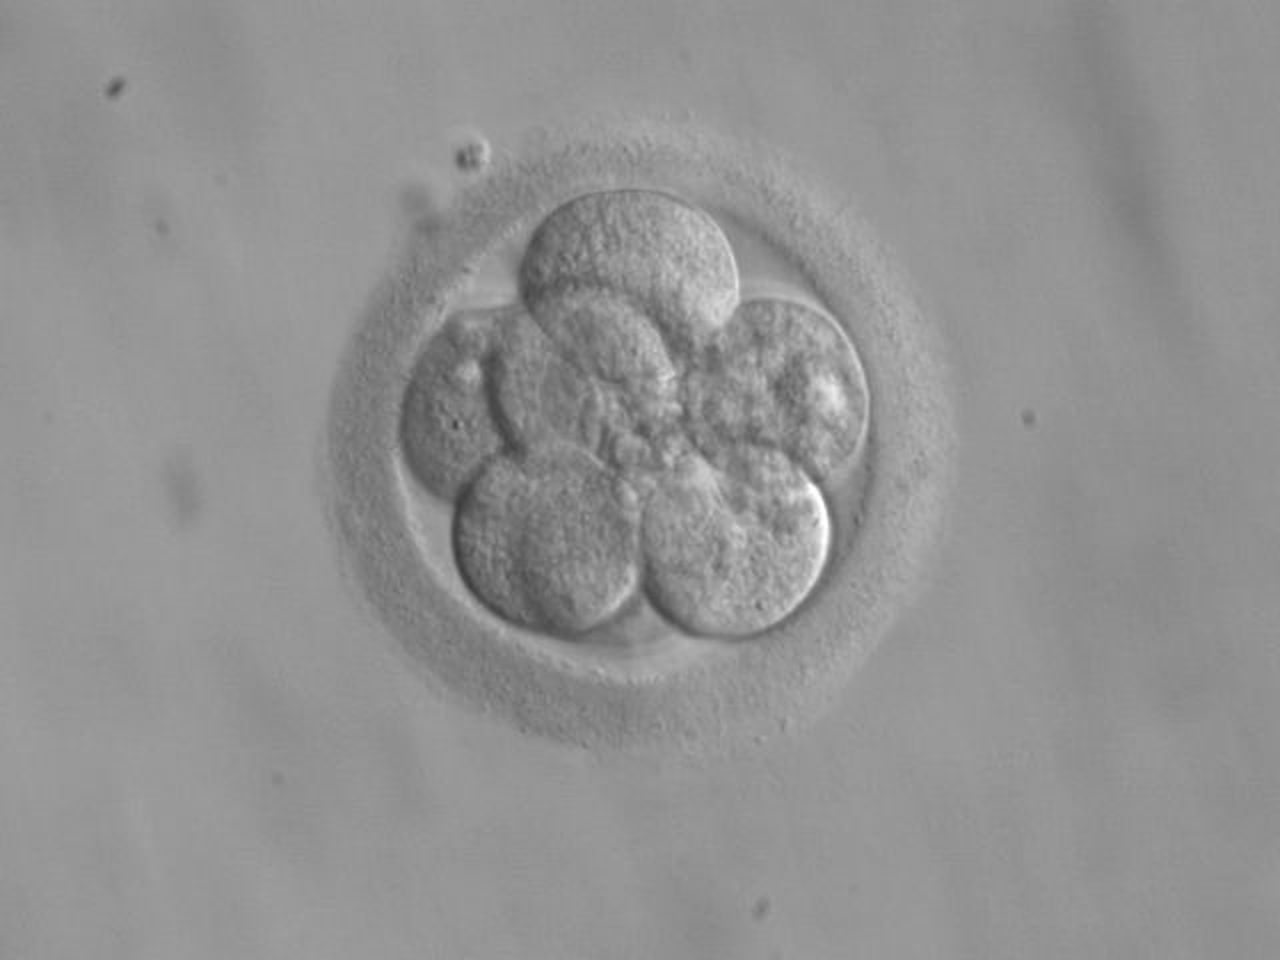 Gezondheidsraad: maak veranderen DNA in  menselijk embryo mogelijk 